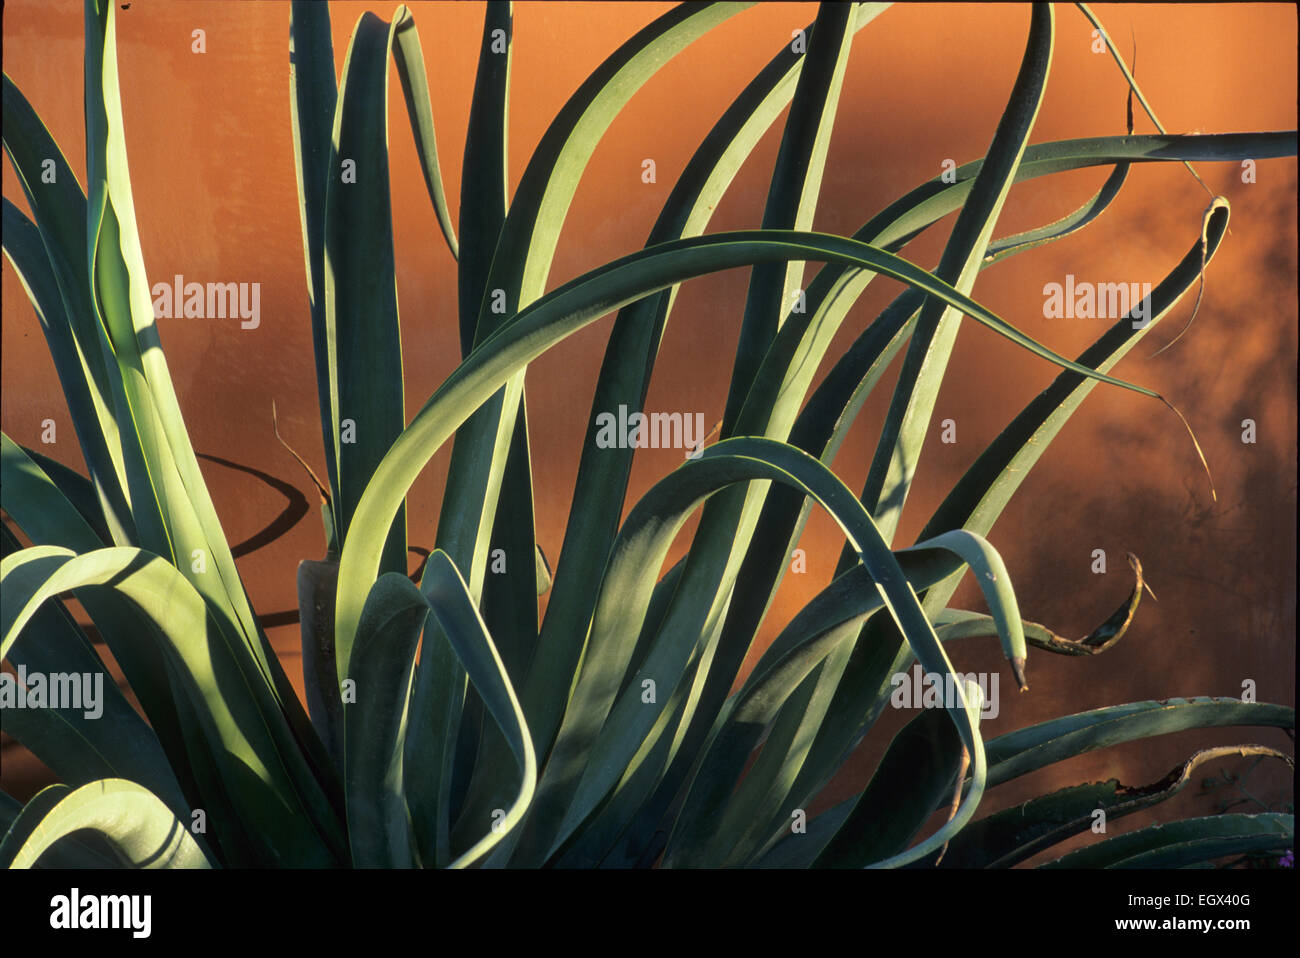 Les feuilles leathery sinueux d'un Yucca baccata, ou espagnol baïonnette. Banque D'Images